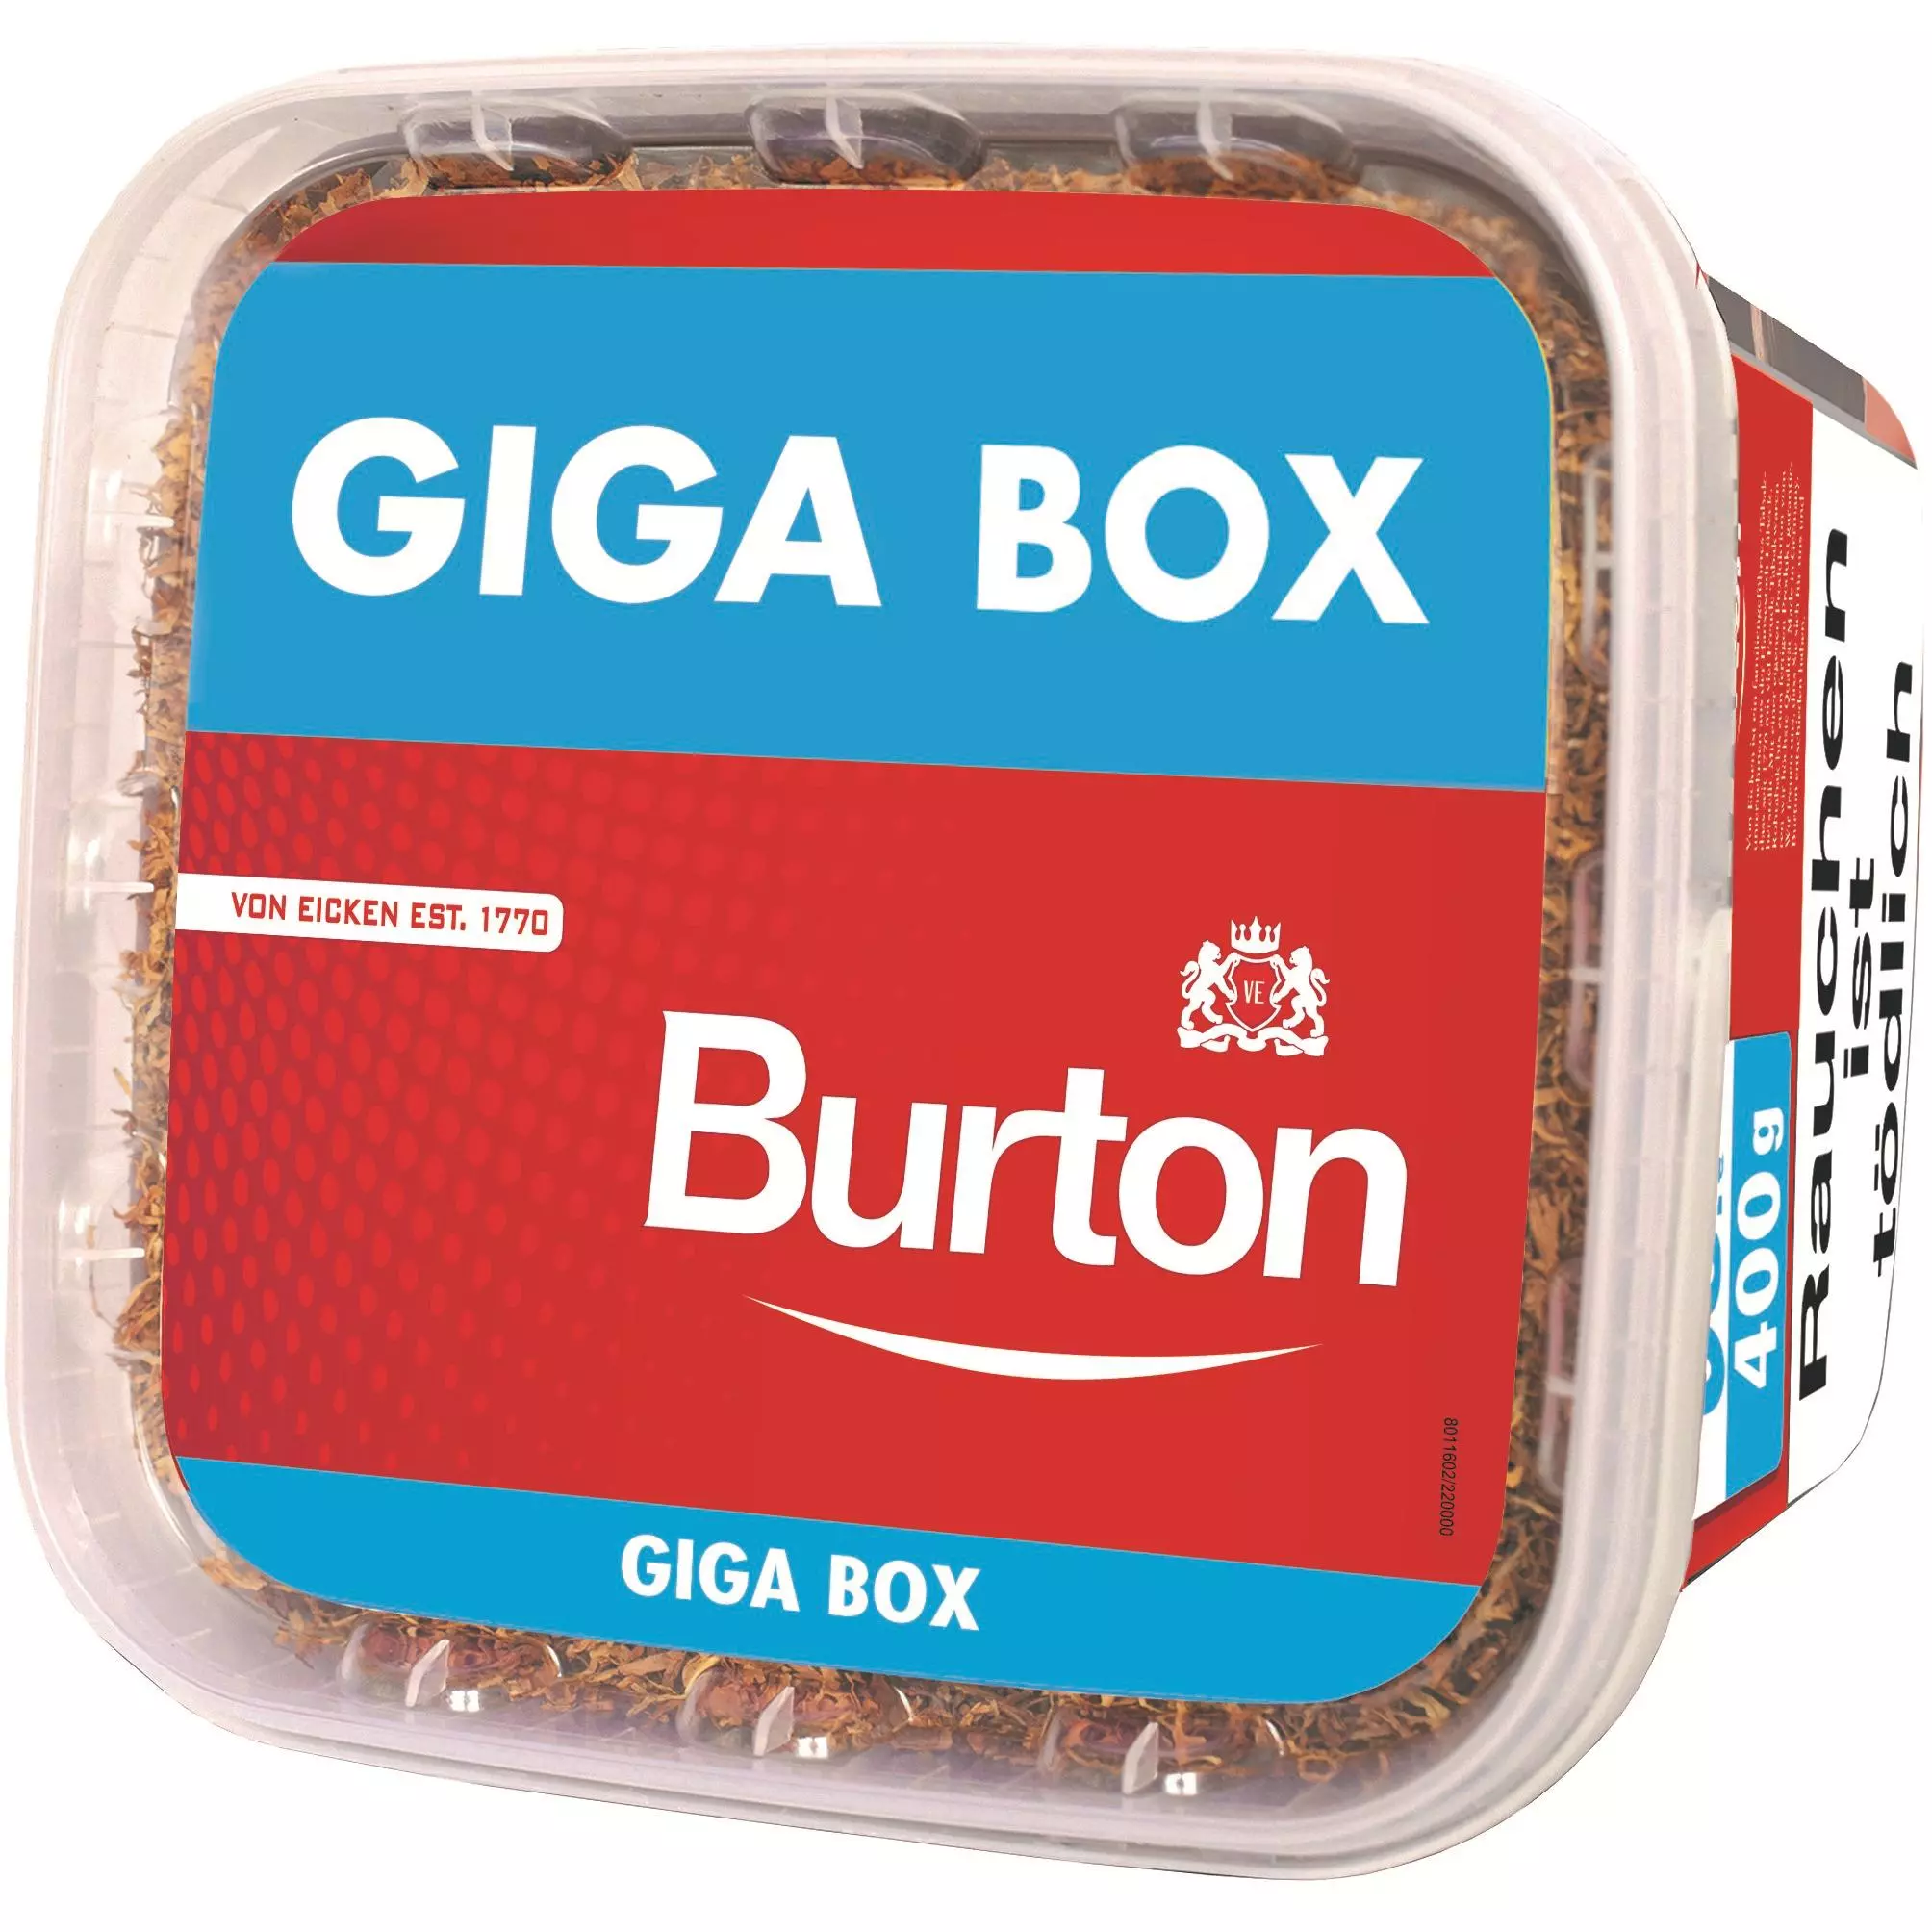 Burton Red Giga Box 1 x 400g Tabak